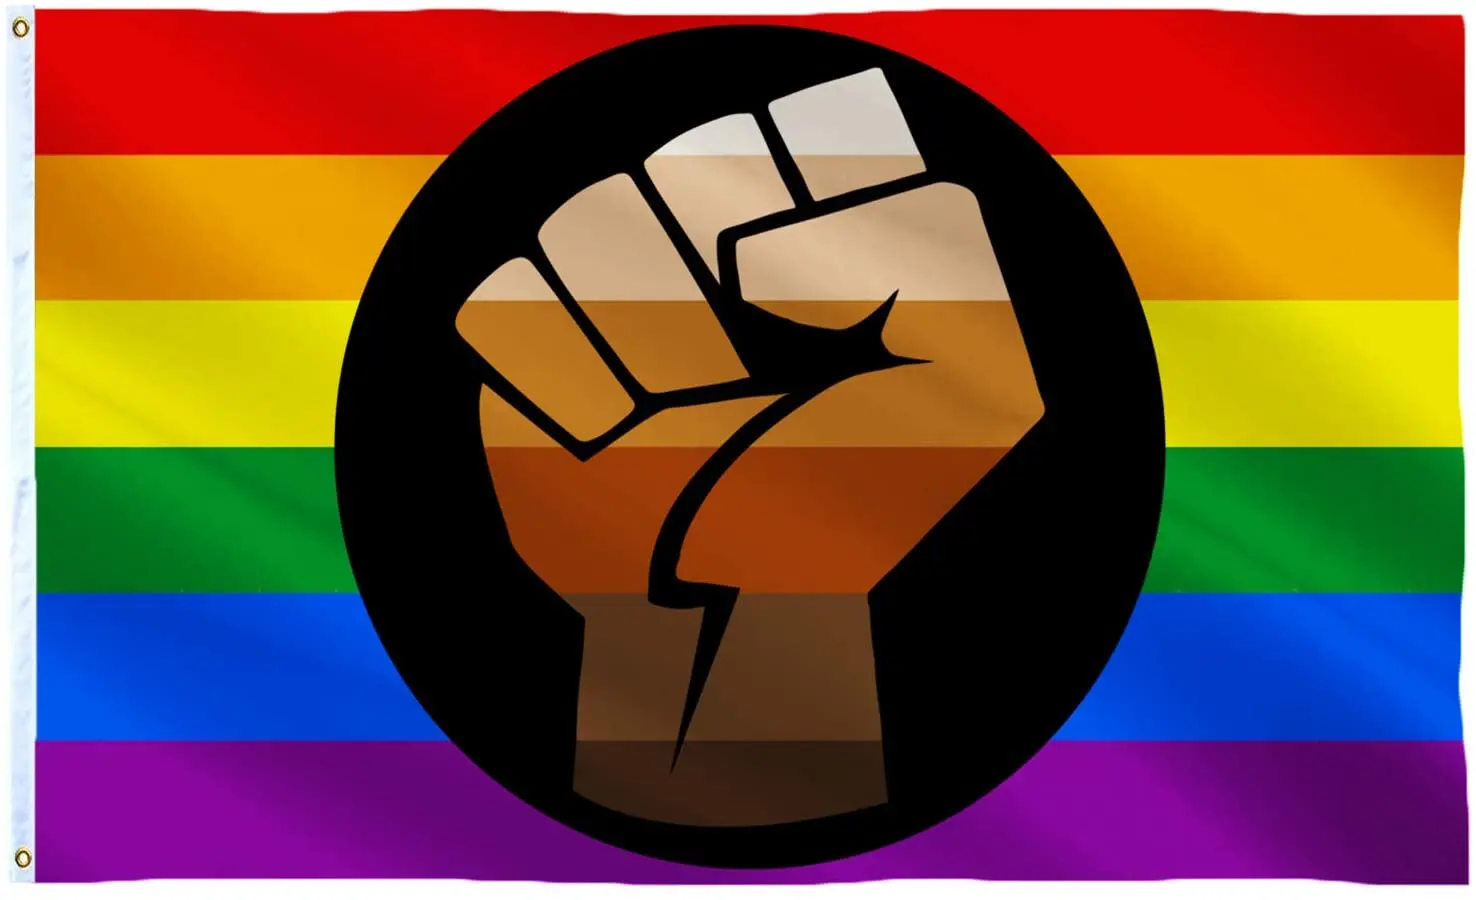 Флаг progress Pride. Цвета поддержки Blm. Цвет поддержки